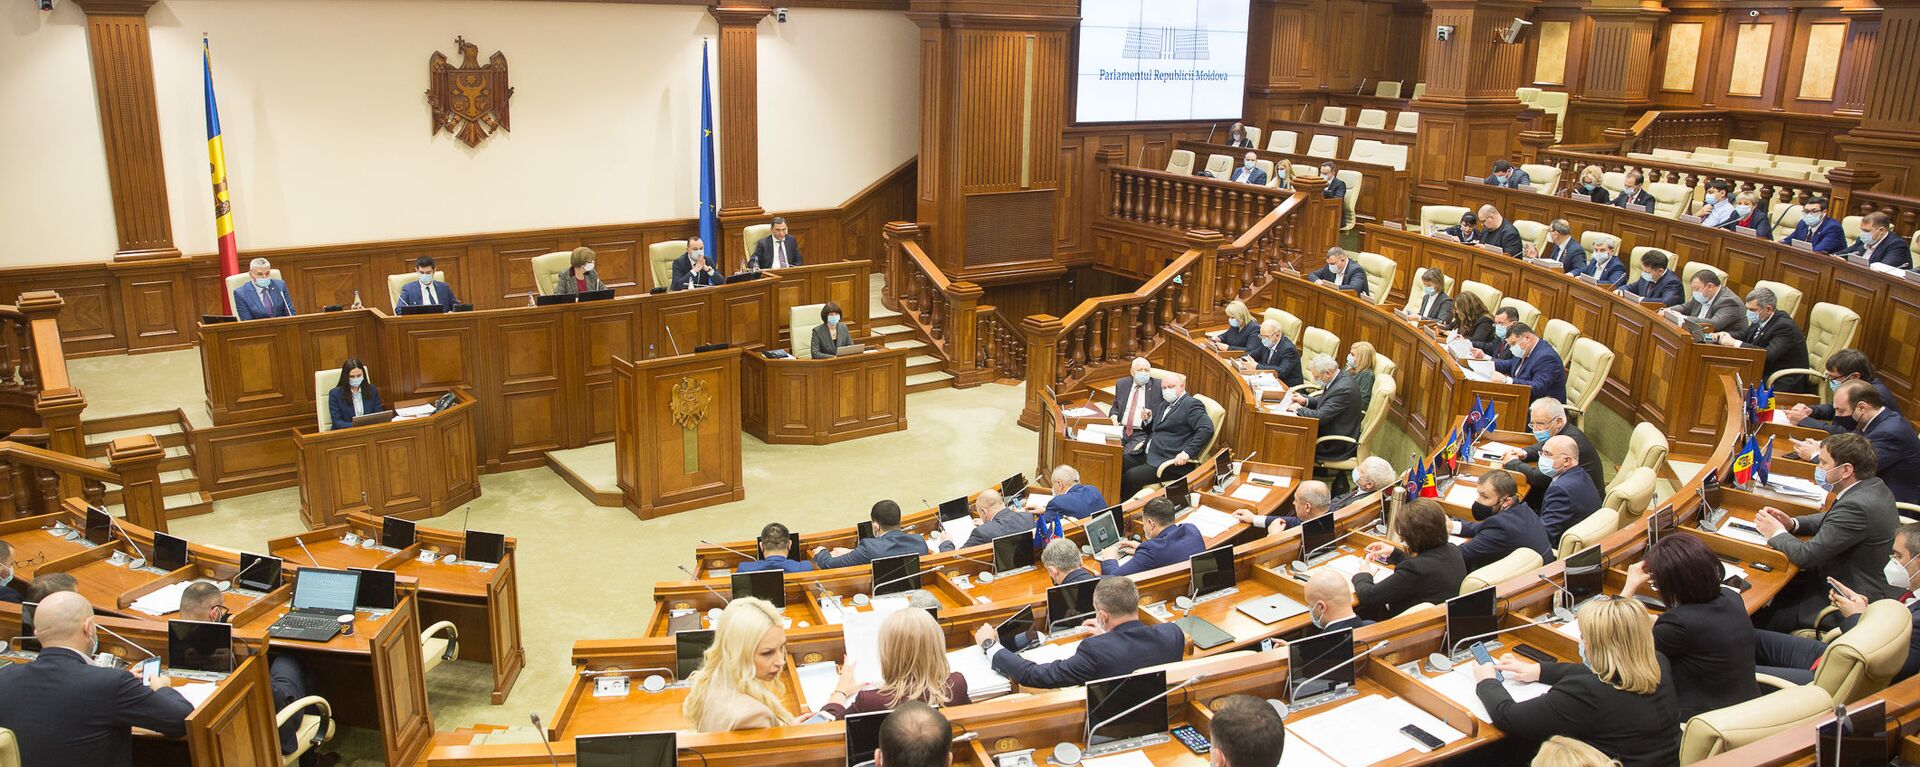 Ședința plenară a Parlamentului, 16 decembrie 2020 - Sputnik Moldova, 1920, 29.05.2021